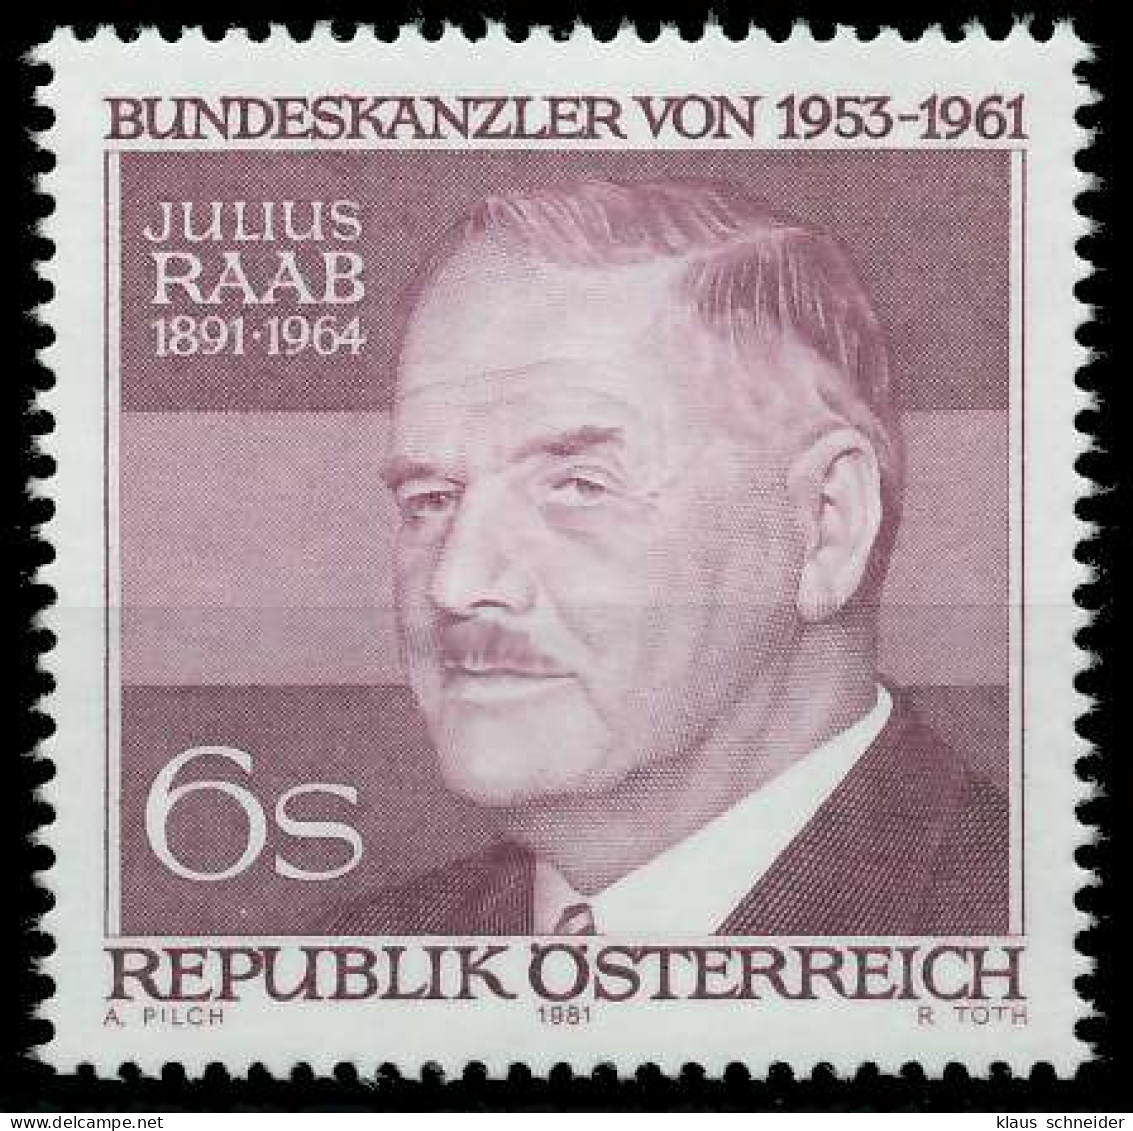 ÖSTERREICH 1981 Nr 1690 Postfrisch X25C88A - Unused Stamps